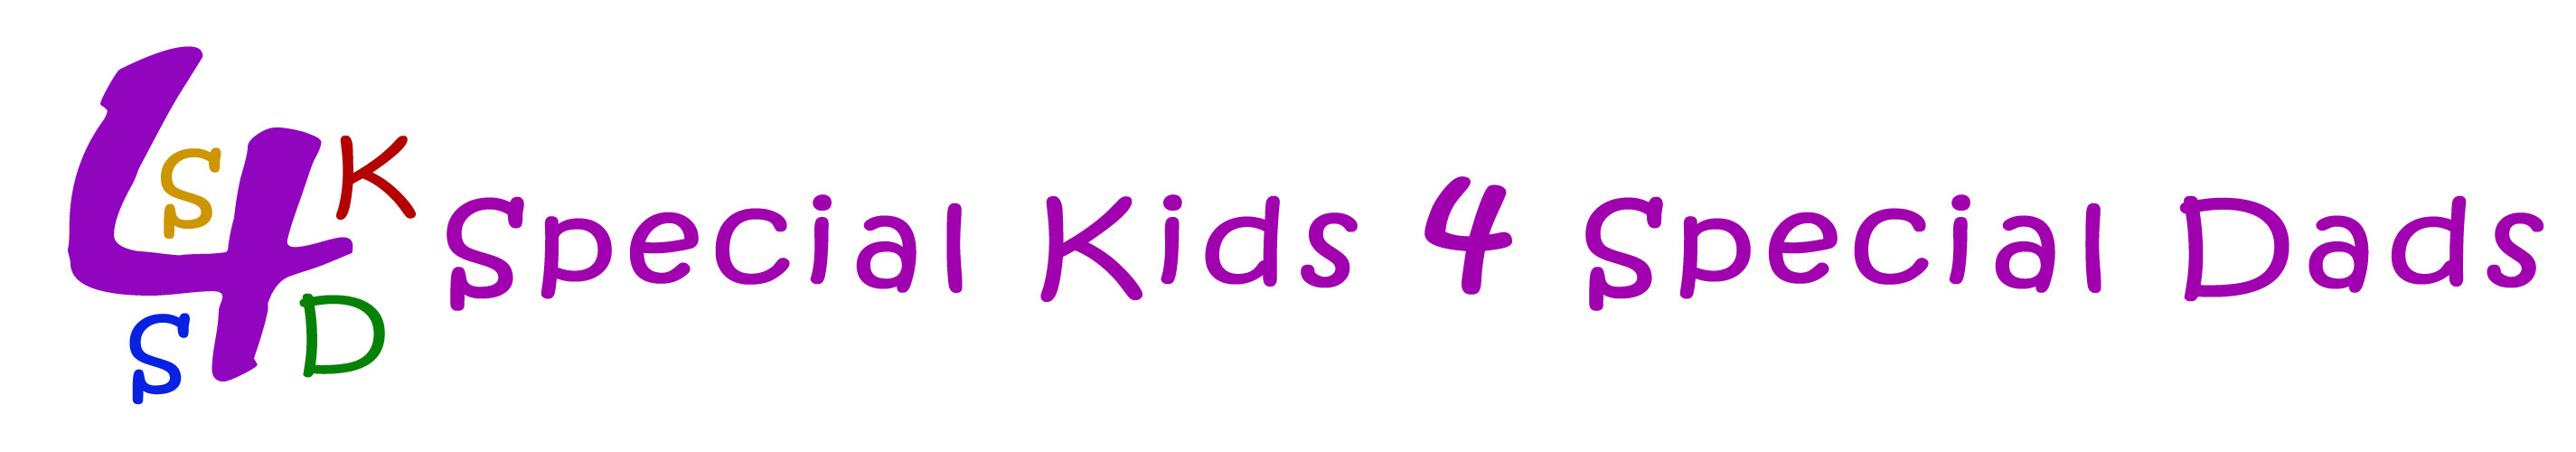 sk4sd logo